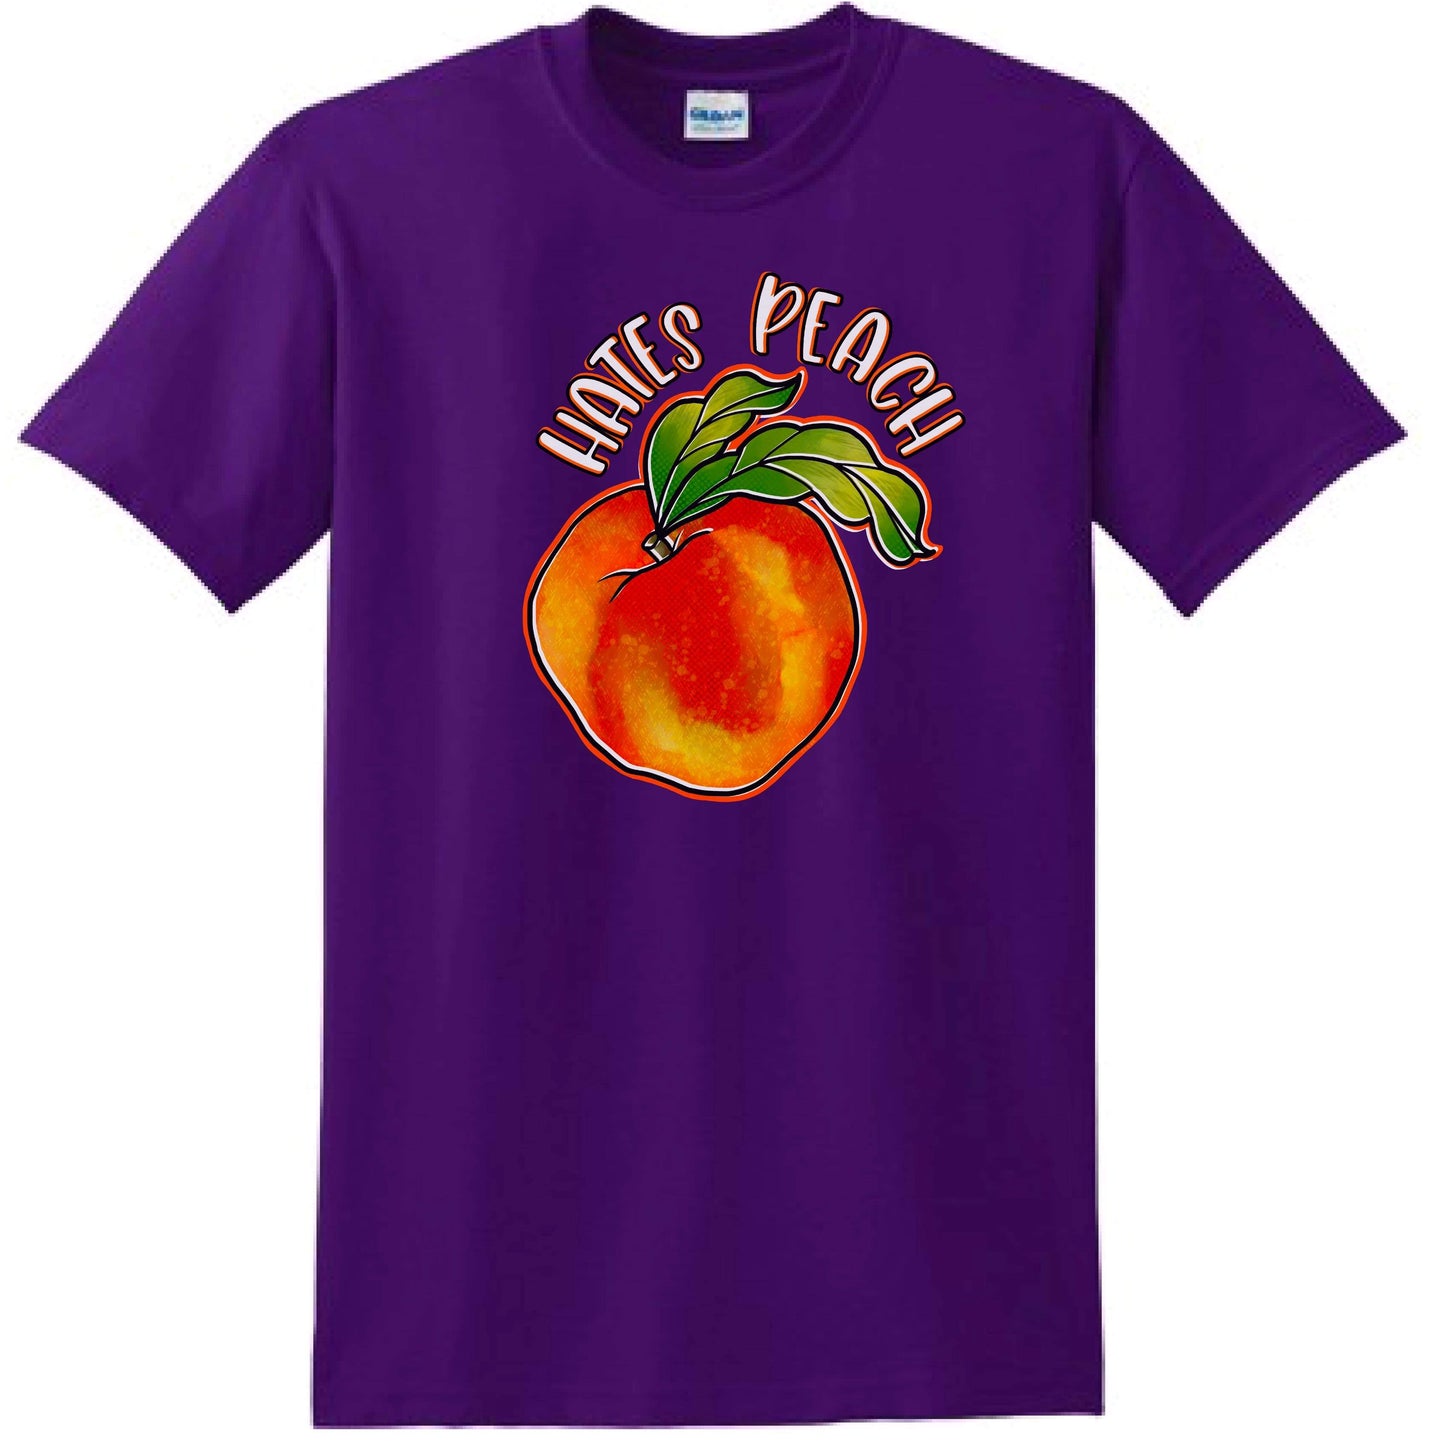 Hates Peach T-Shirt